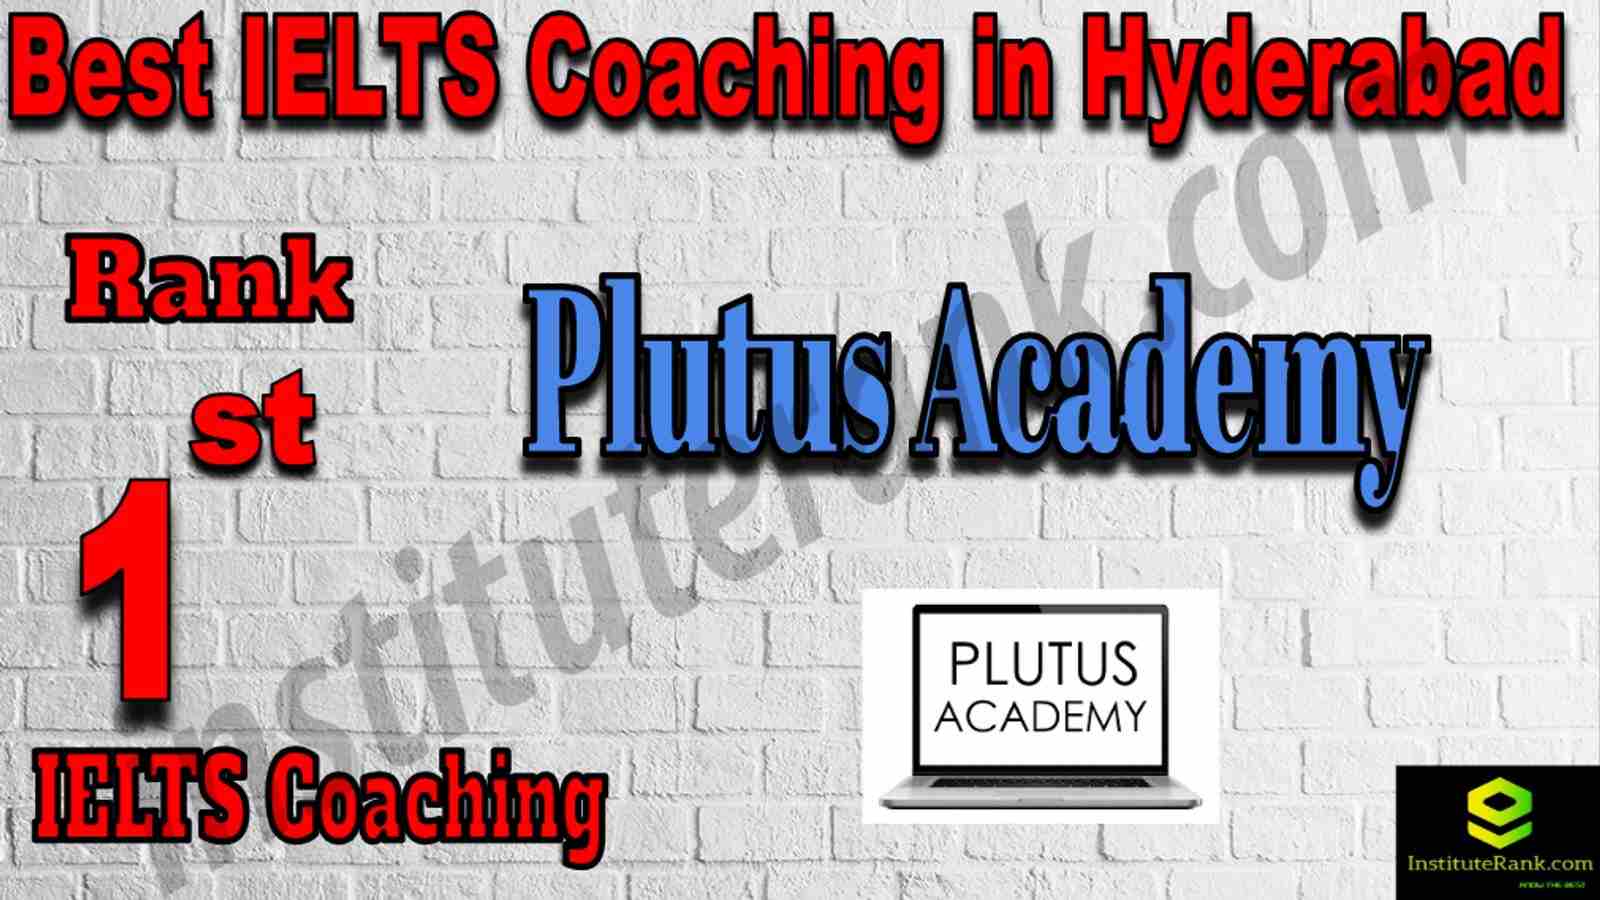 1st Best IELTS Coaching in Hyderabad